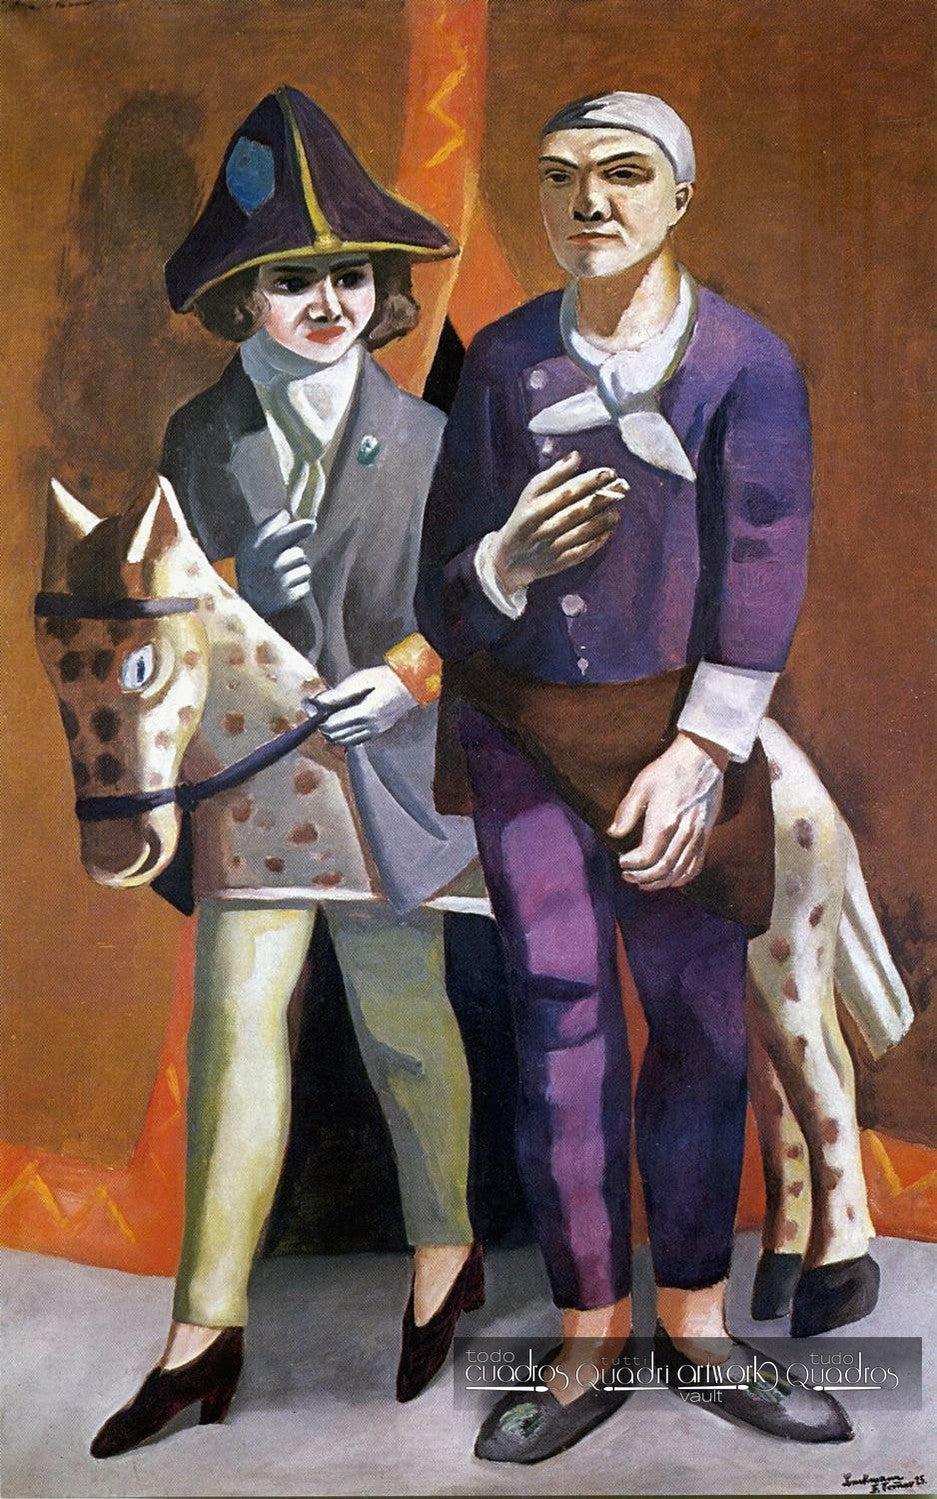 El artista y su esposa, Max Beckmann